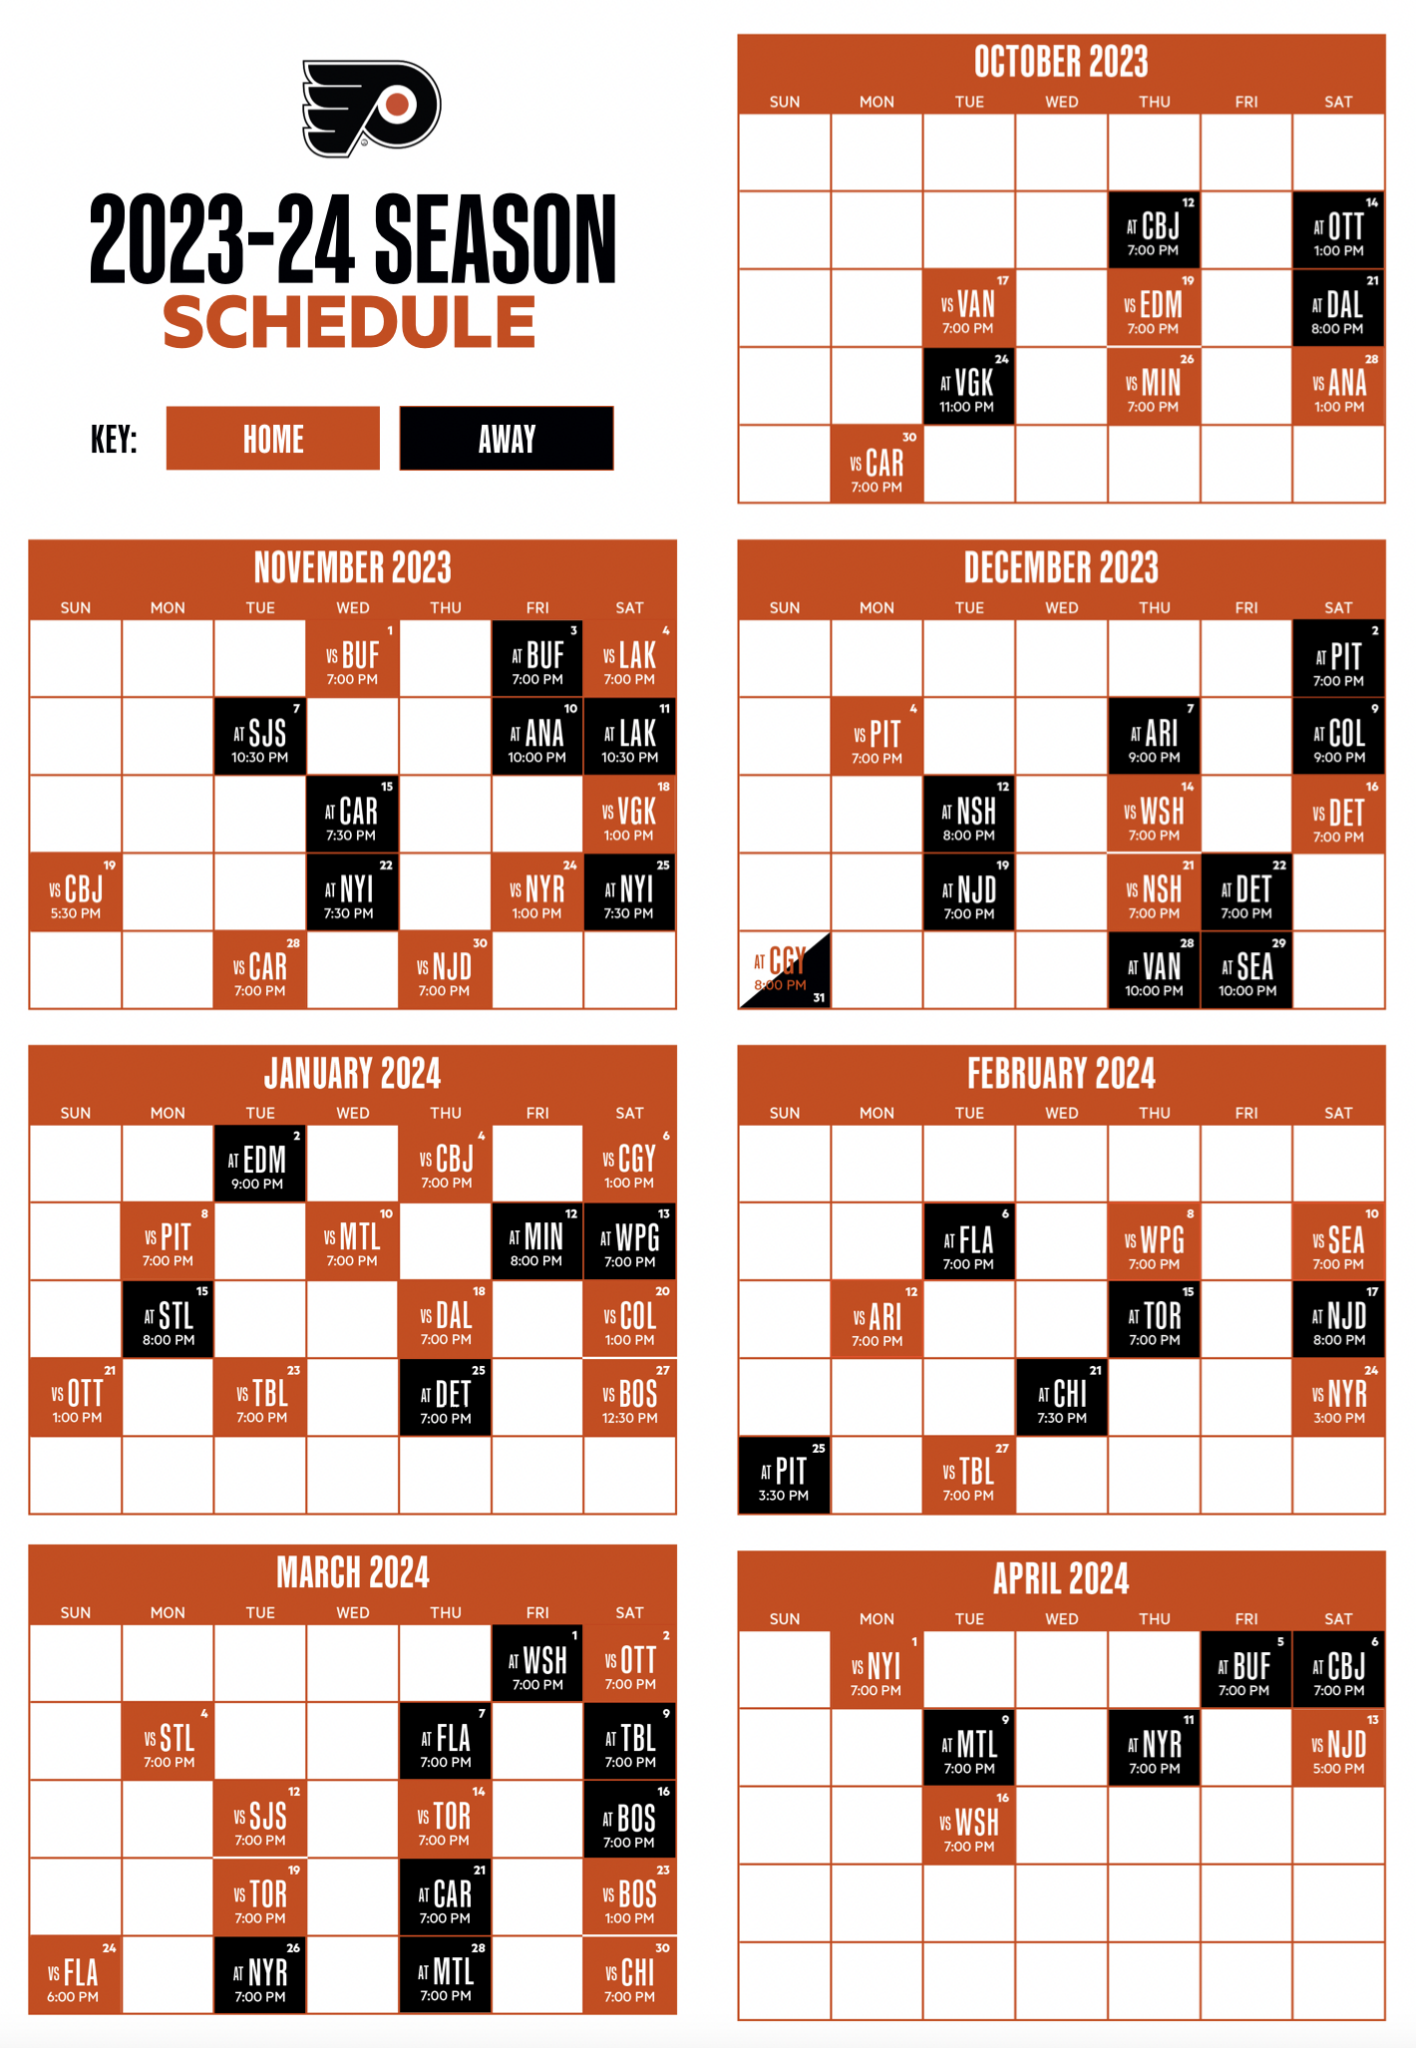 Flyers Release 202324 Schedule